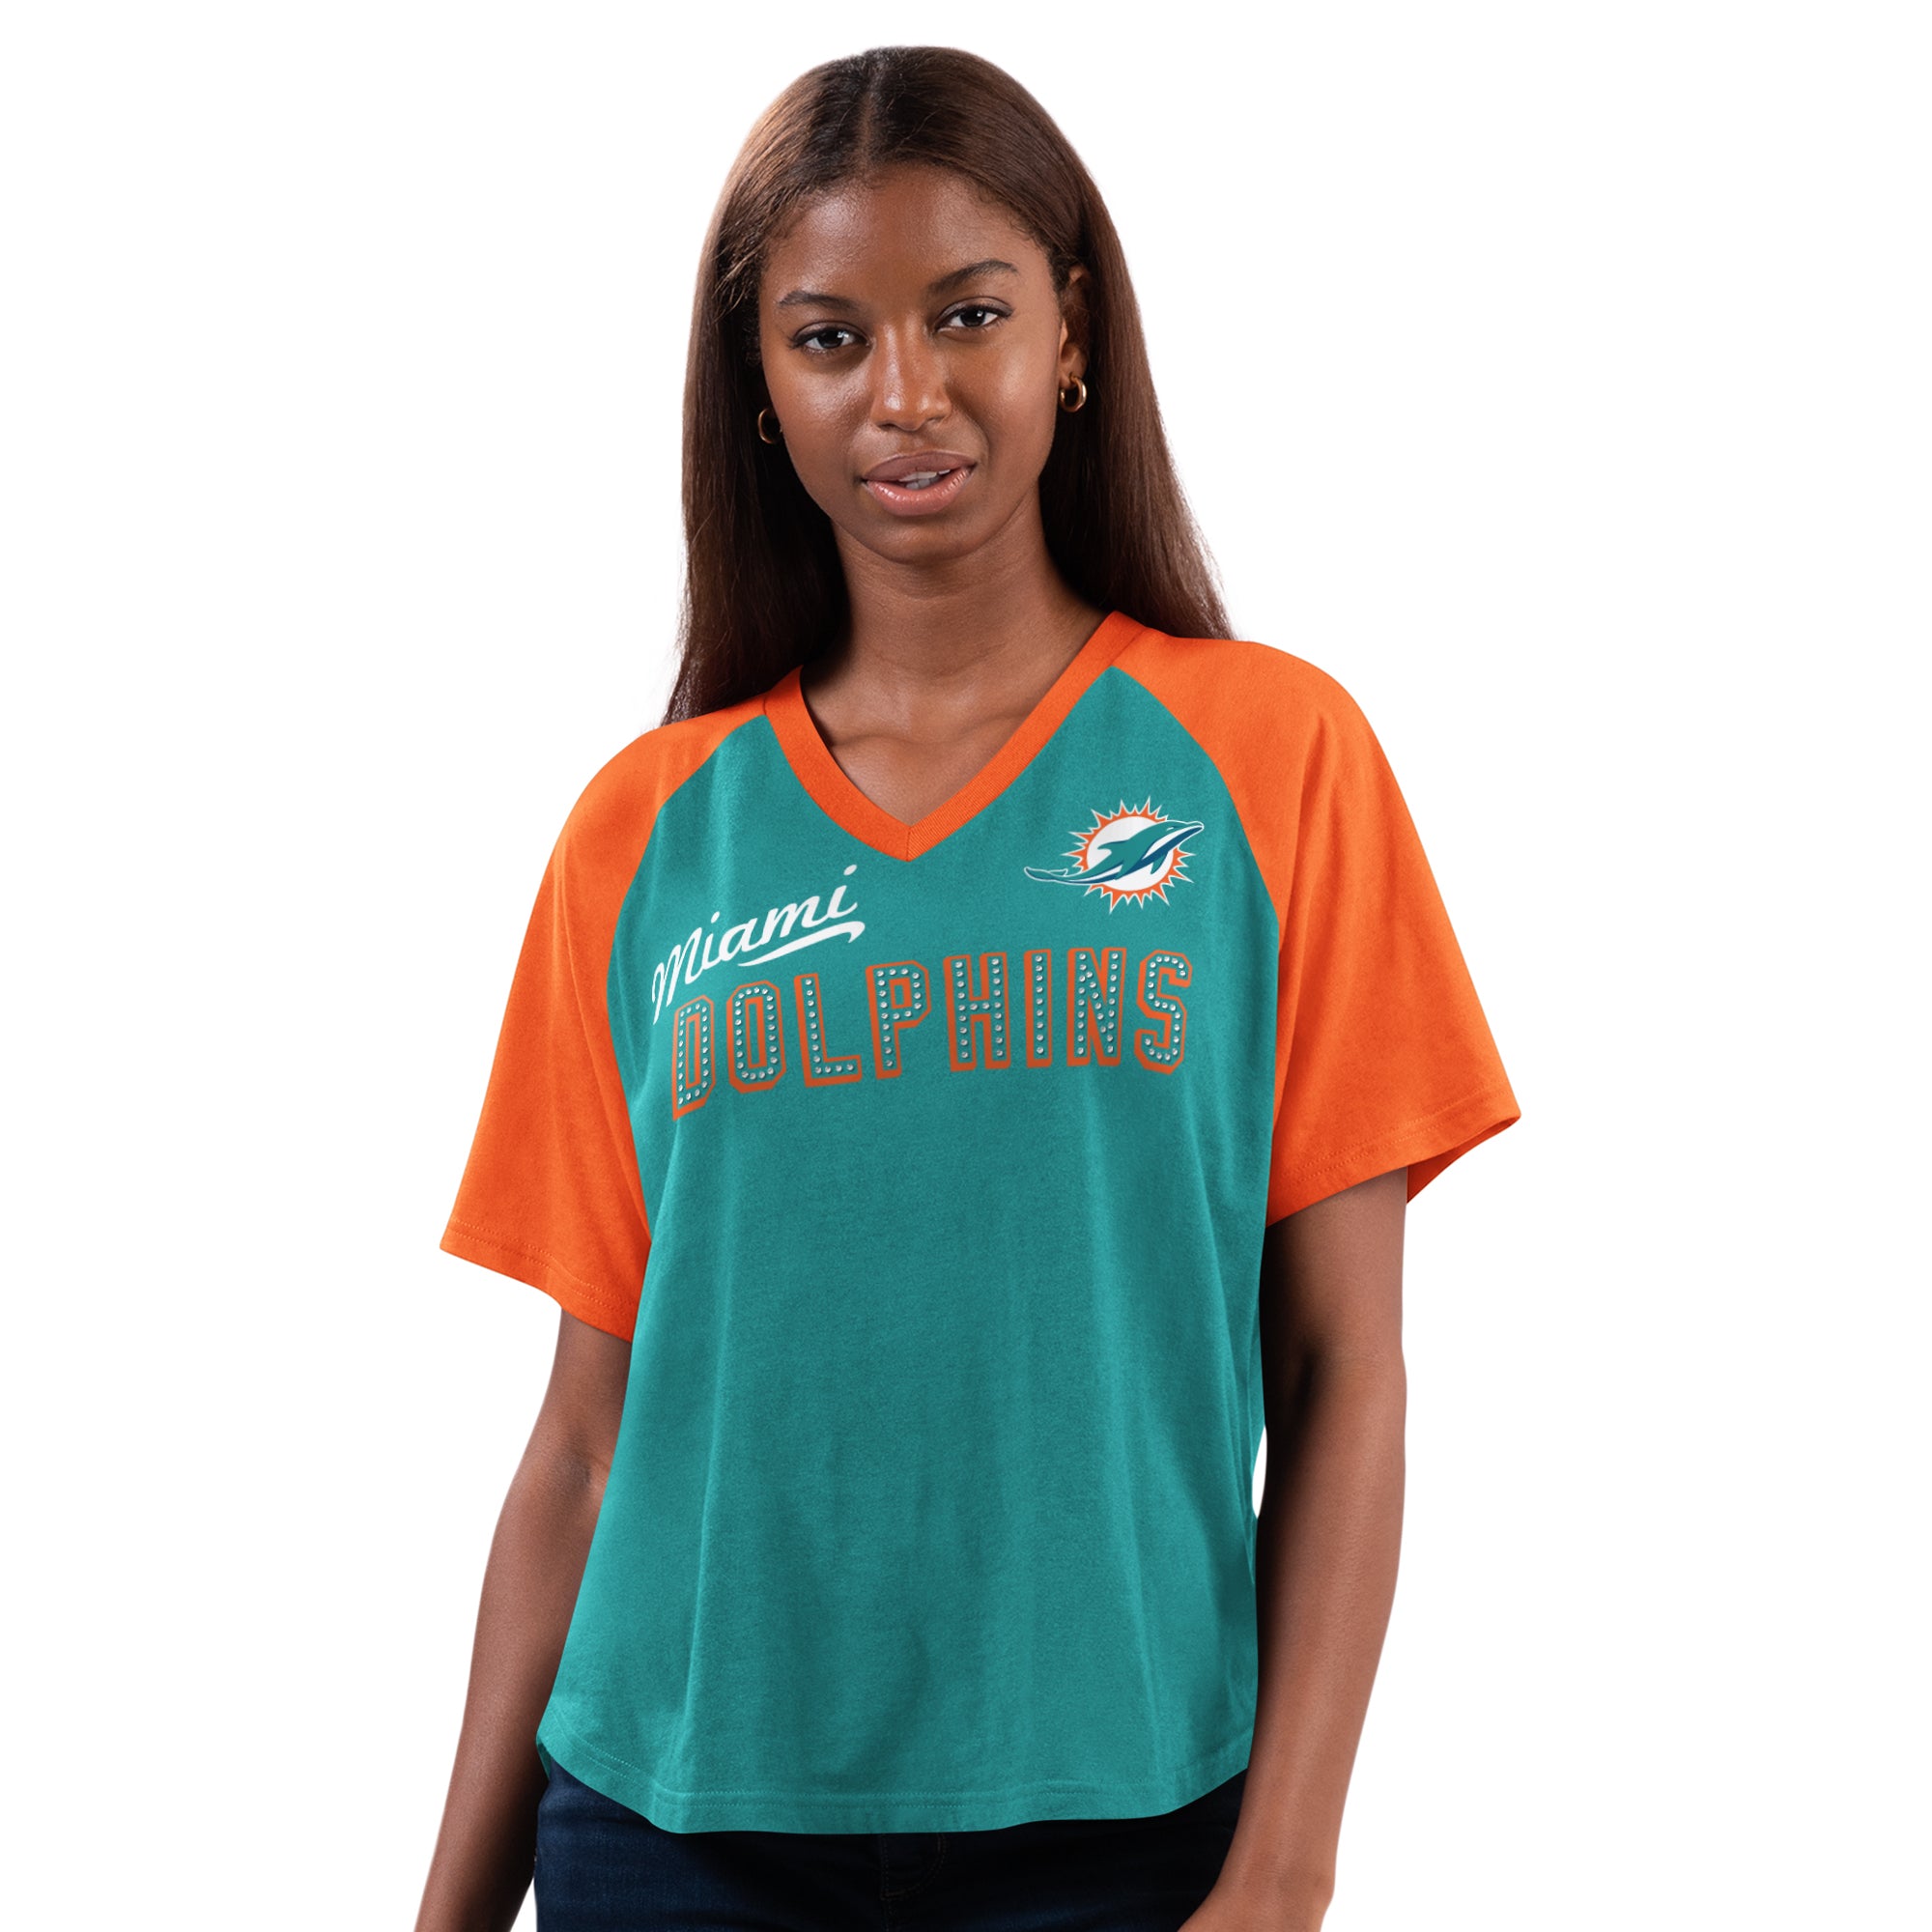 Miami Dolphins Glll 4Her Women's Rhinestone V-Neck T-Shirt - Aqua / Orange